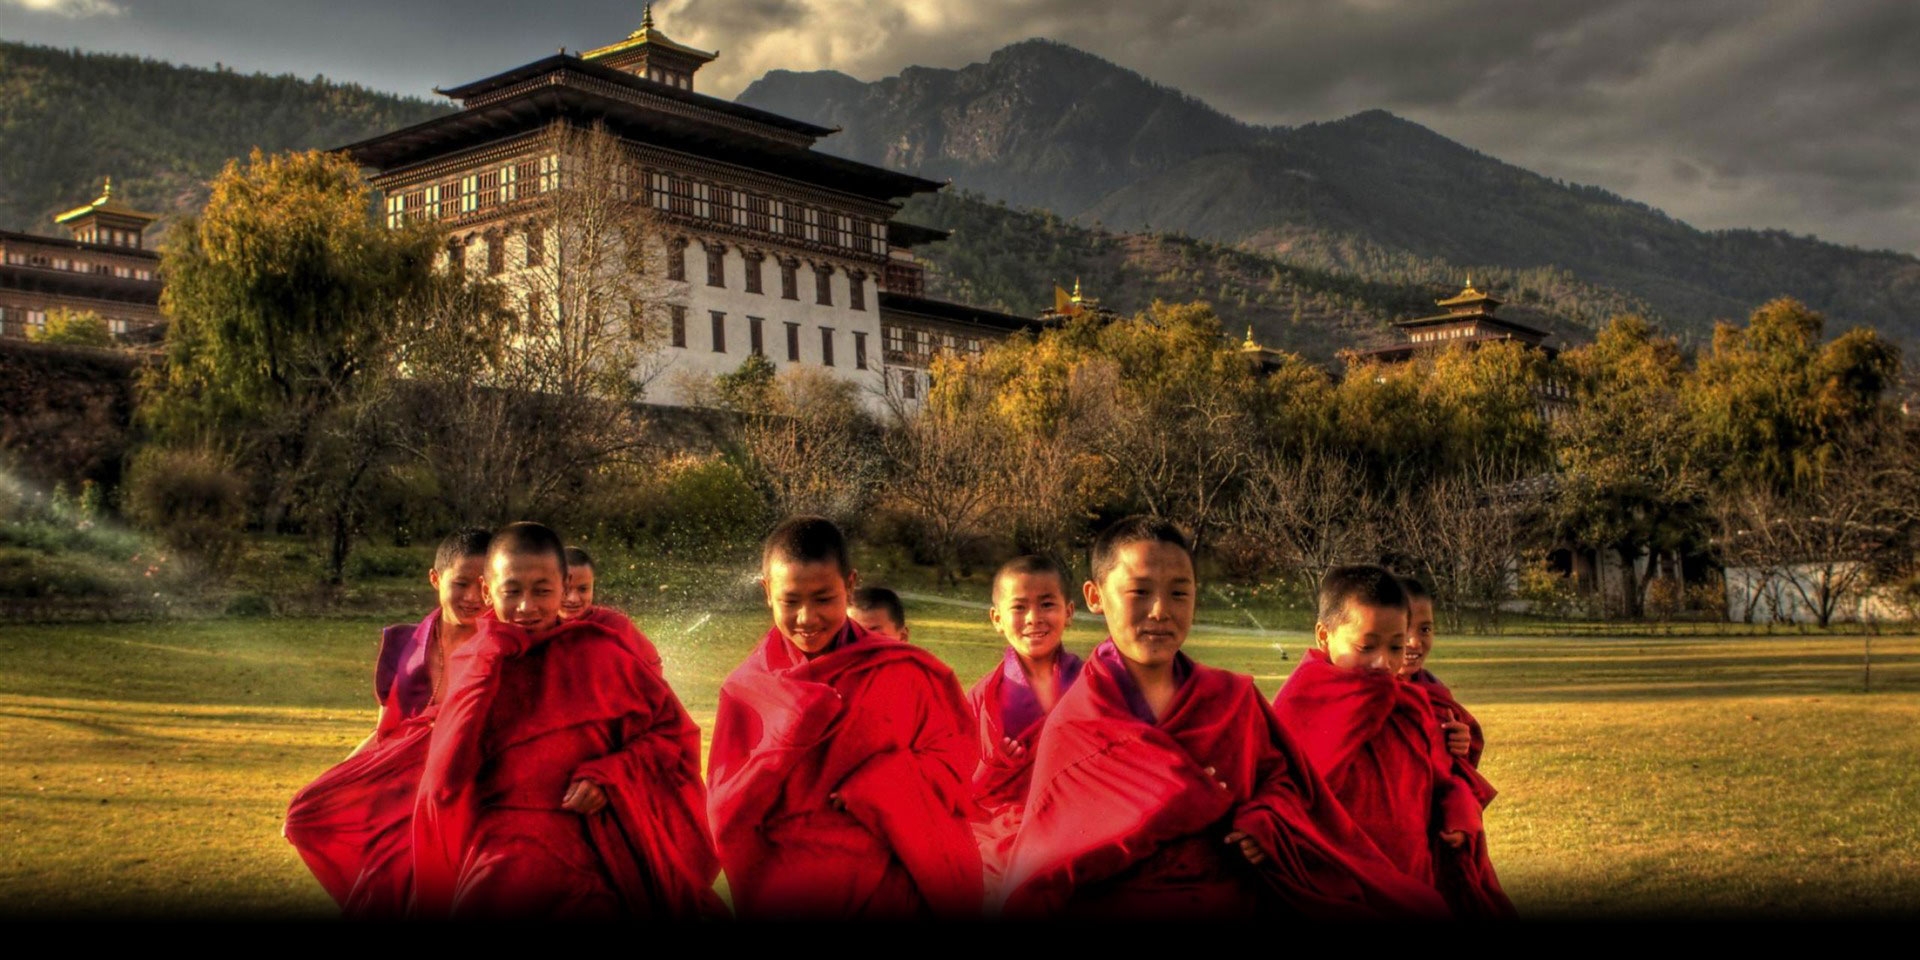 The Monks of Bhutan